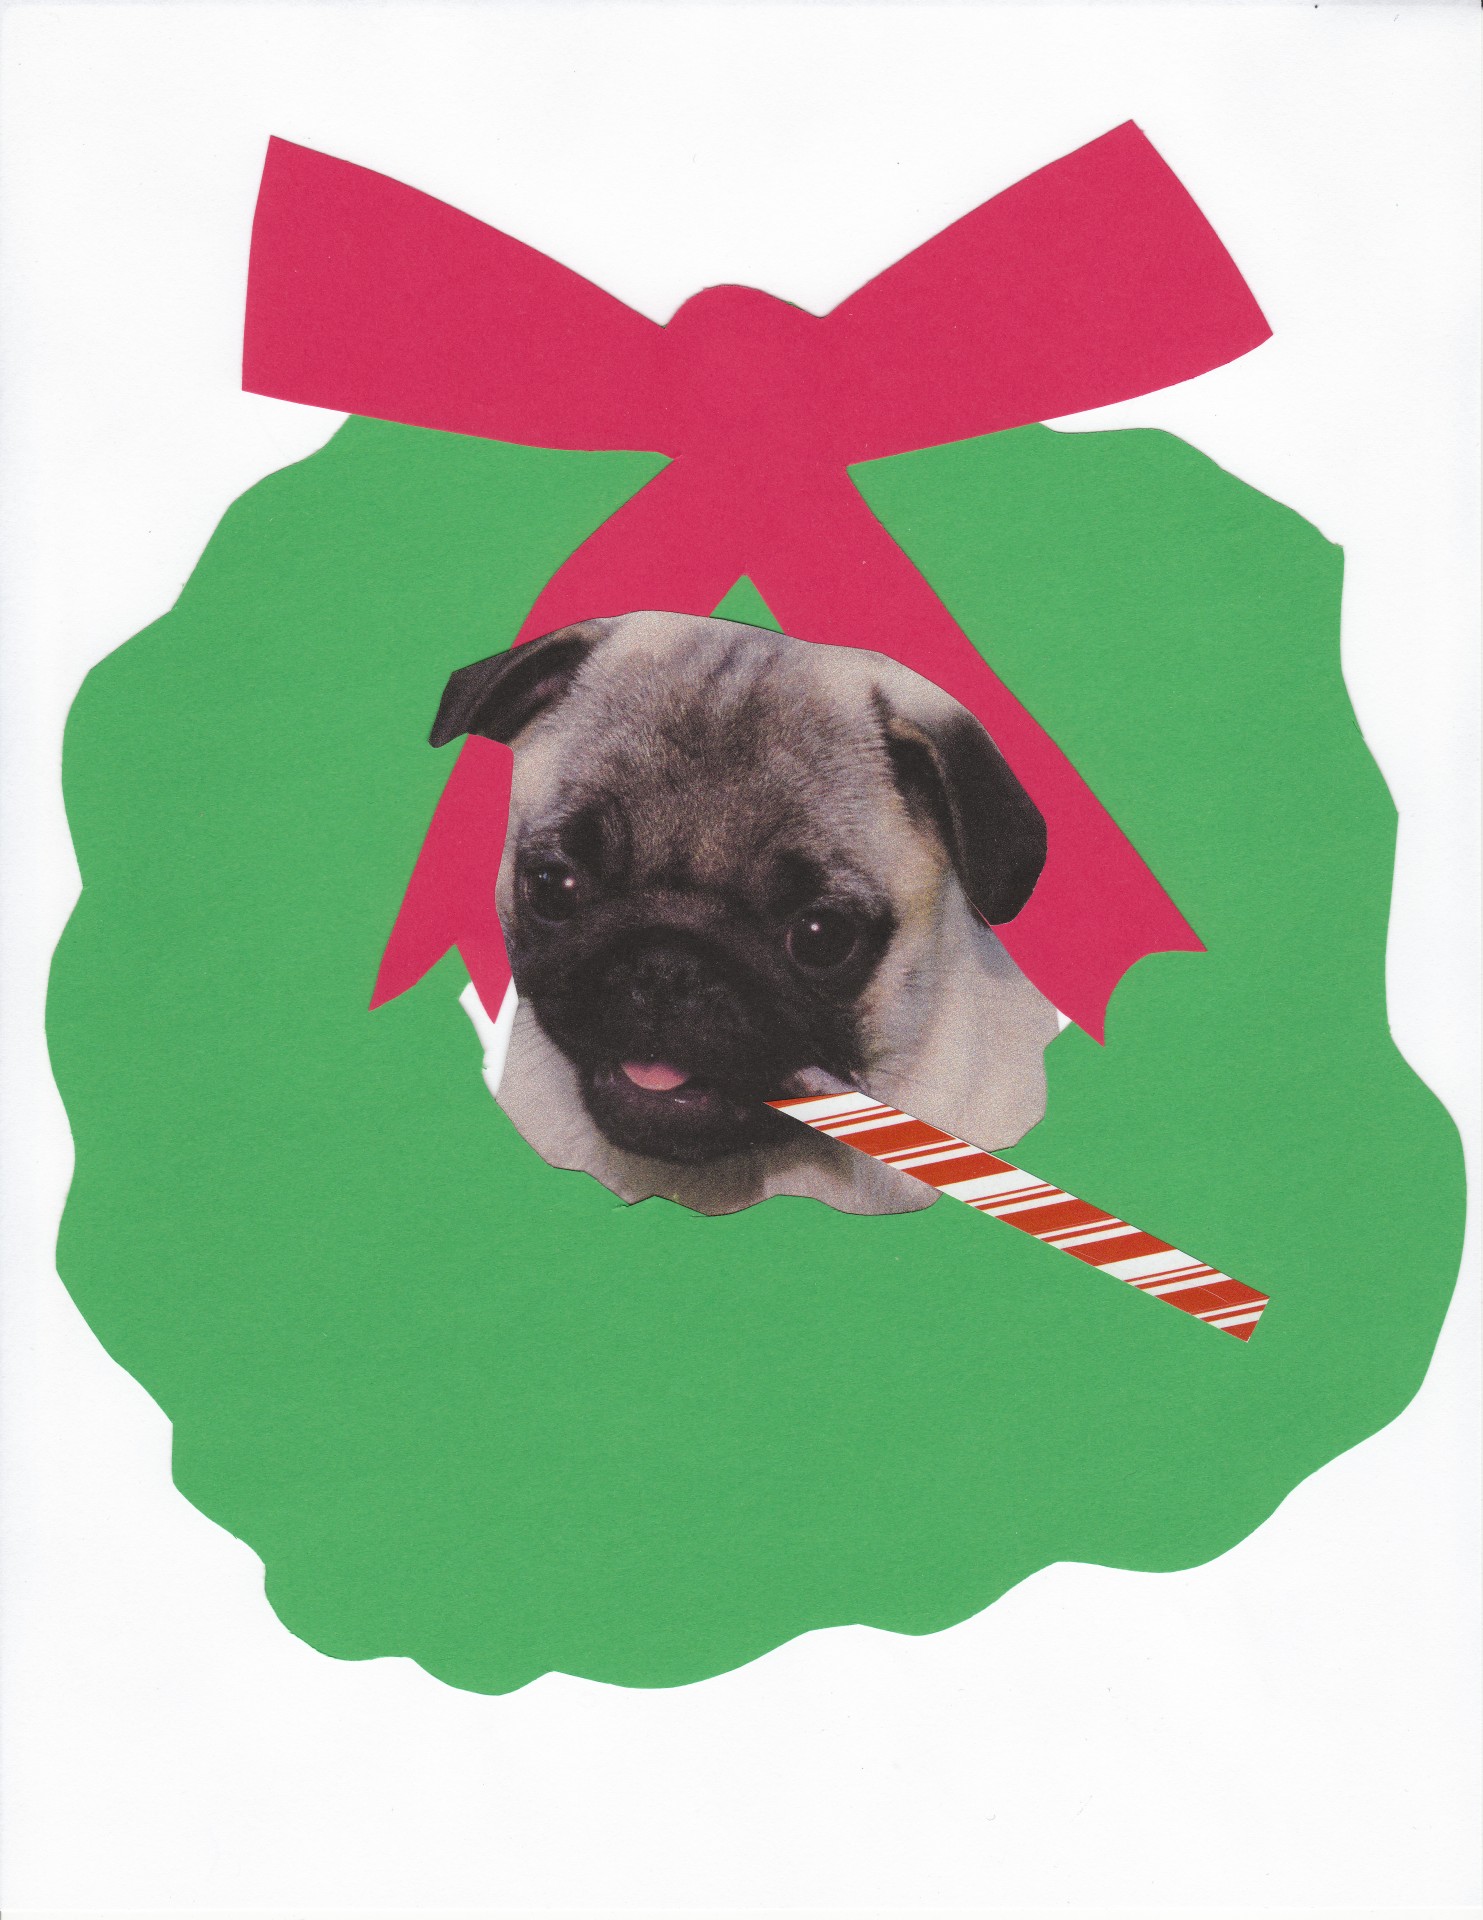 Pug Dog Christmas Wreath